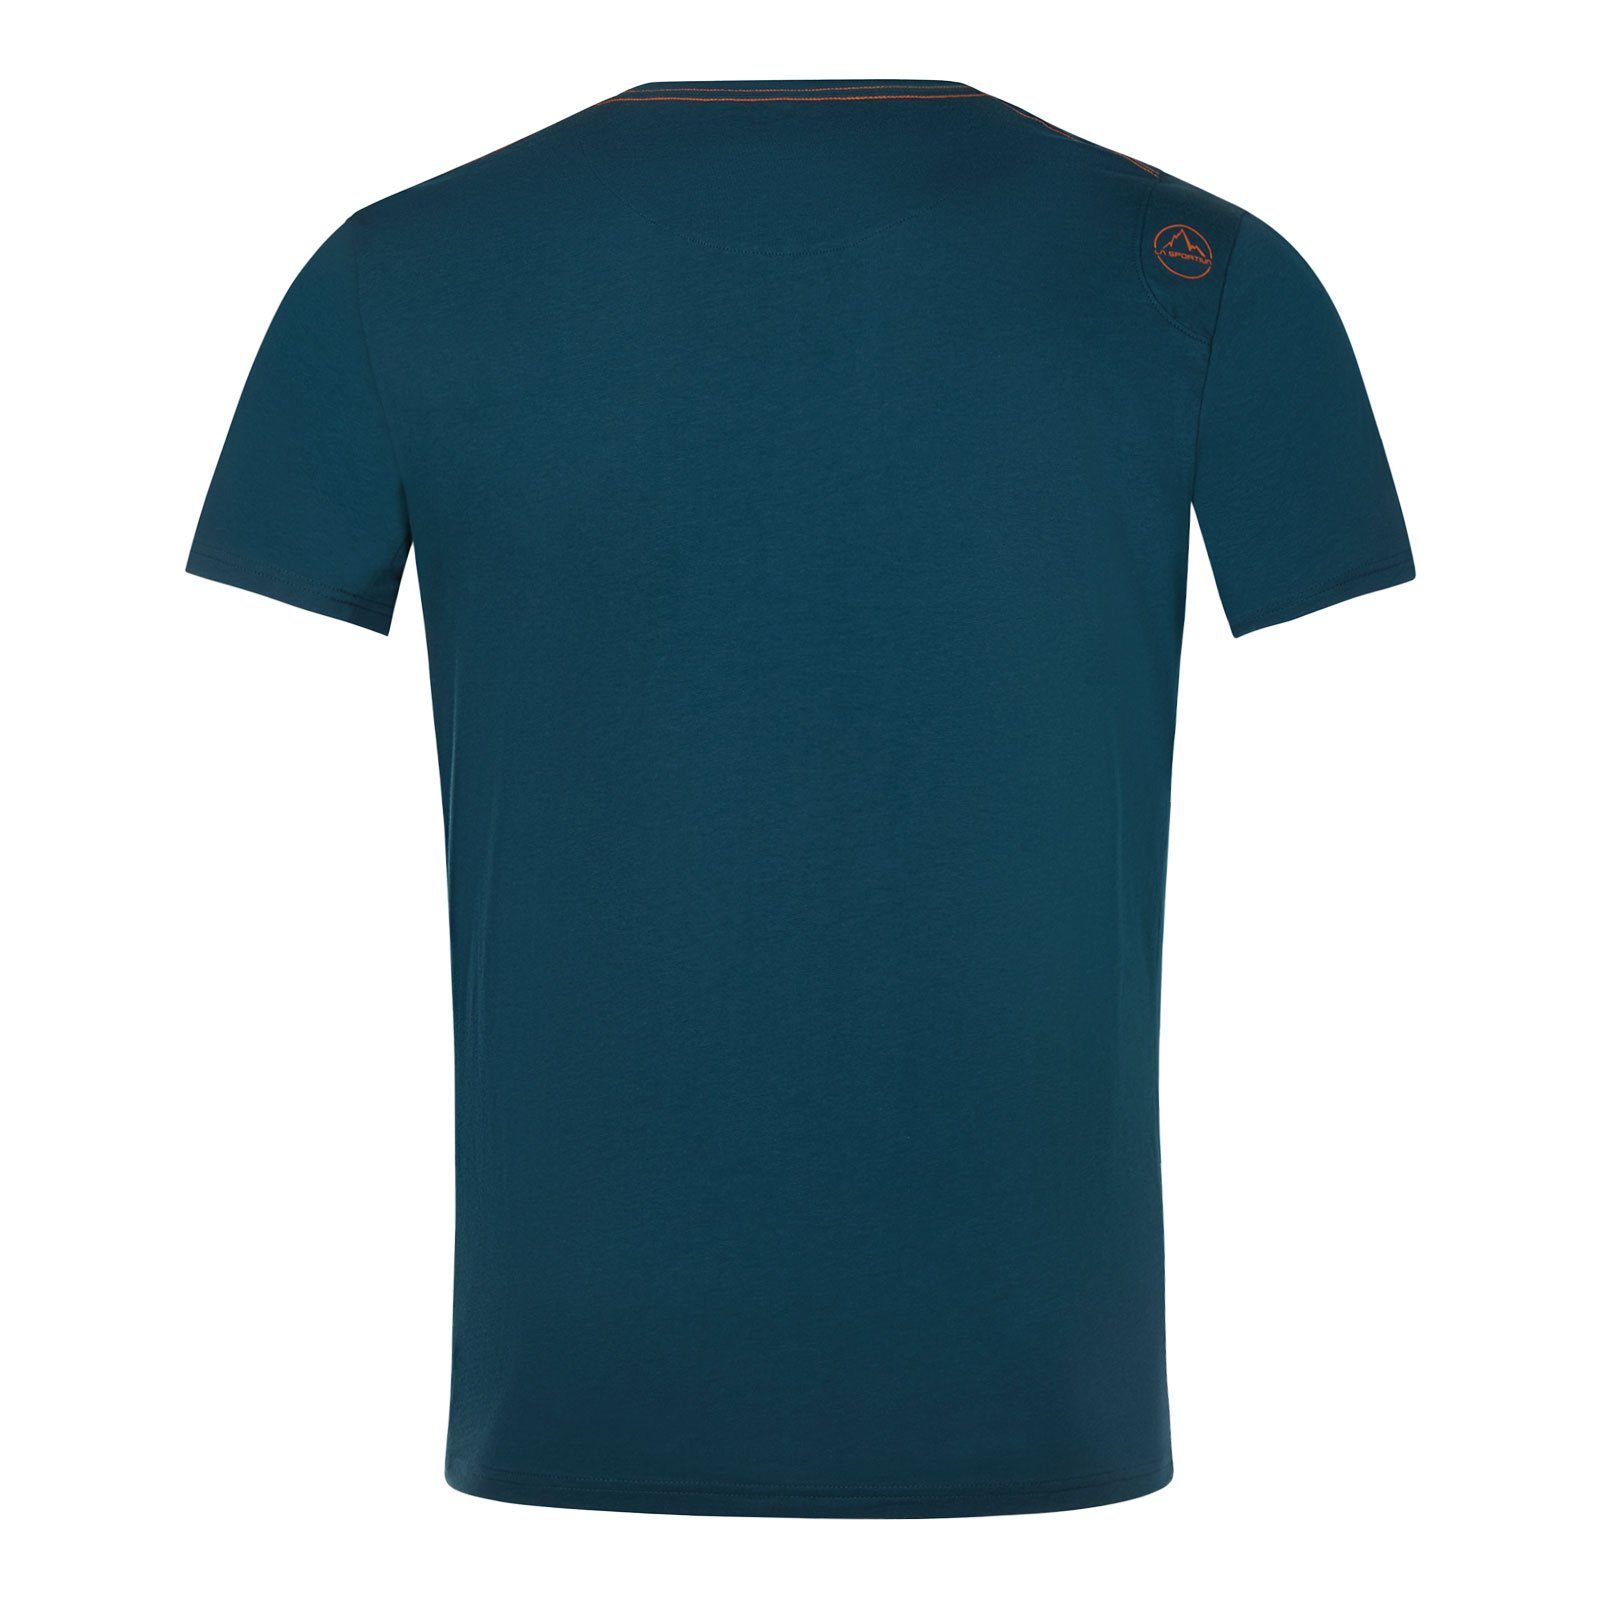 La Sportiva T-Shirt Van 639639 Baumwolle storm M organischer 100% aus blue